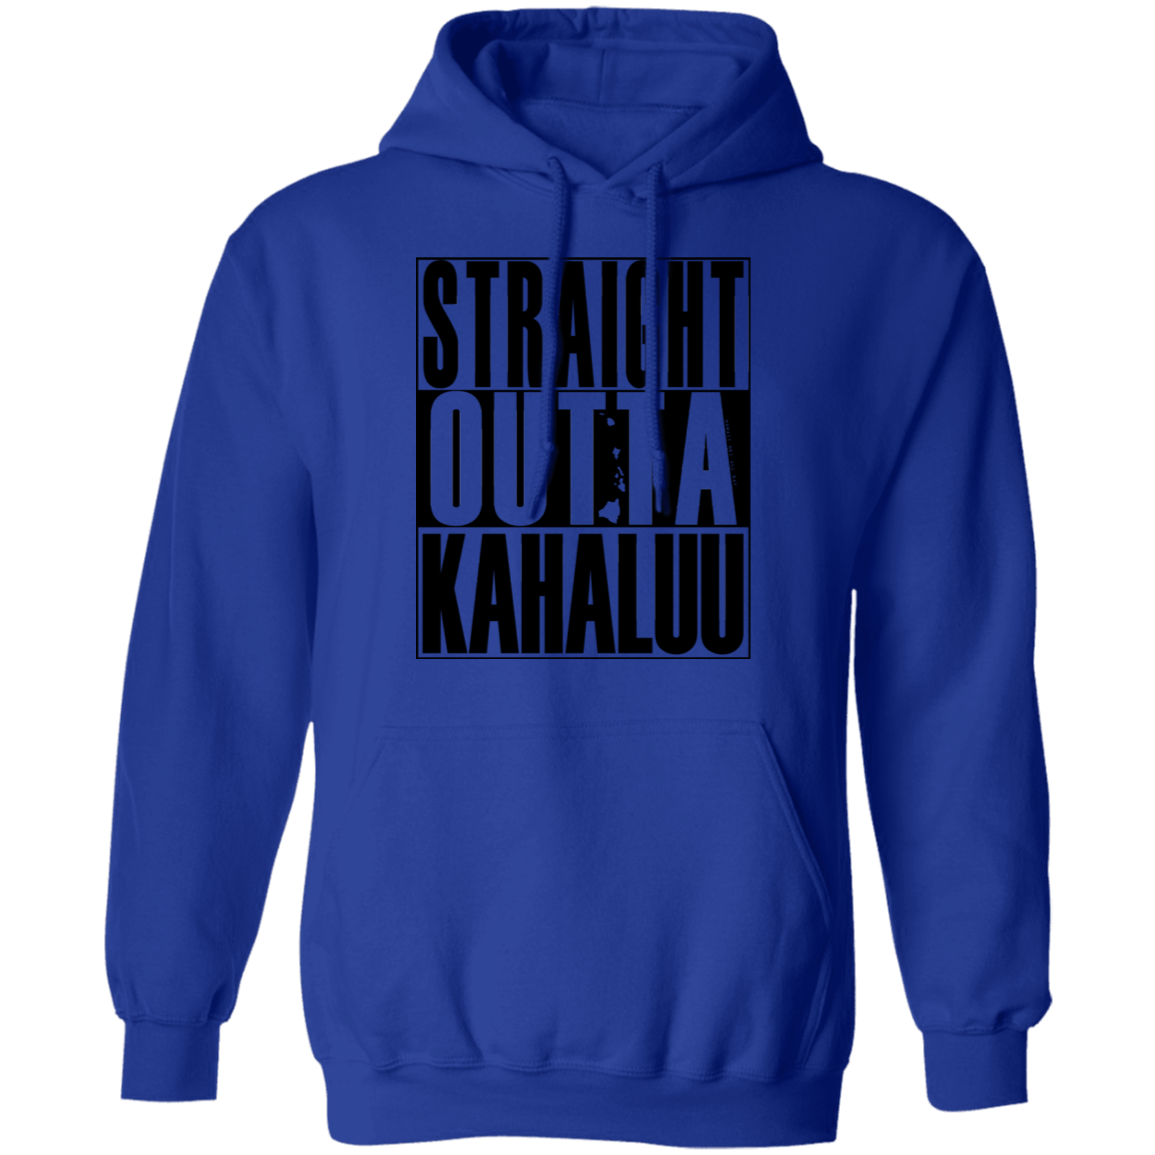 Straight Outta Kahaluu (black ink) Pullover Hoodie